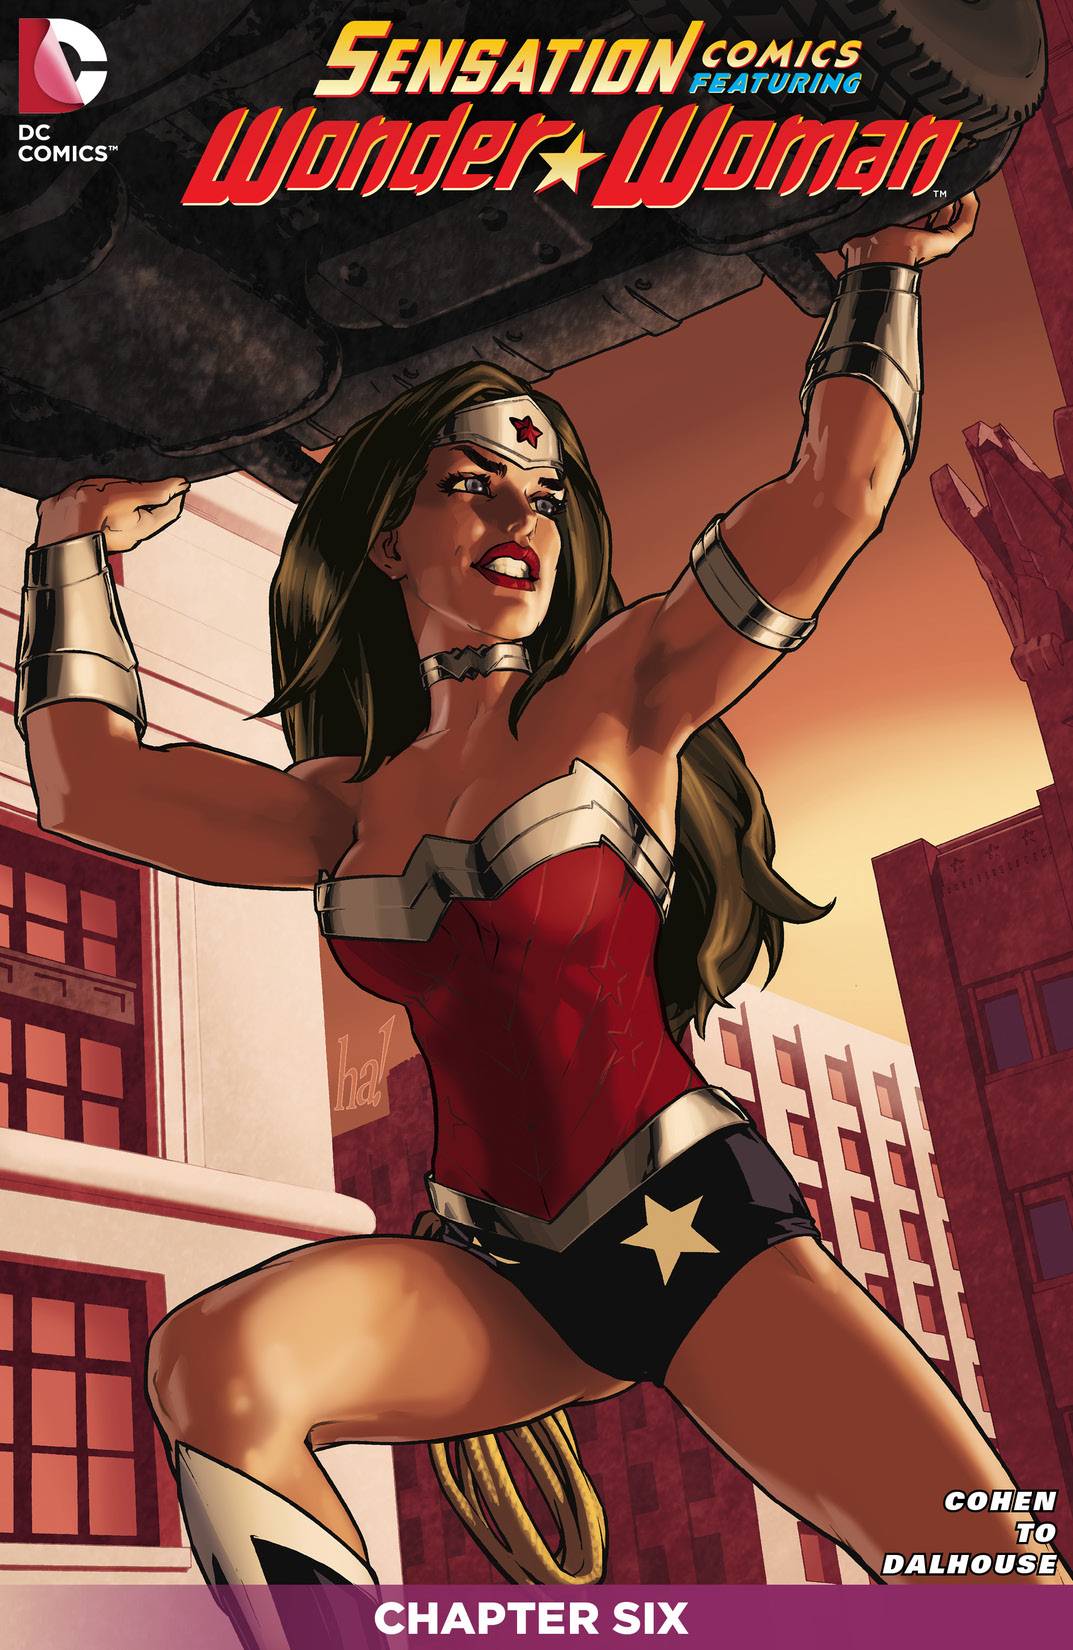 Sensation Comics Featuring Wonder Woman #6 preview images